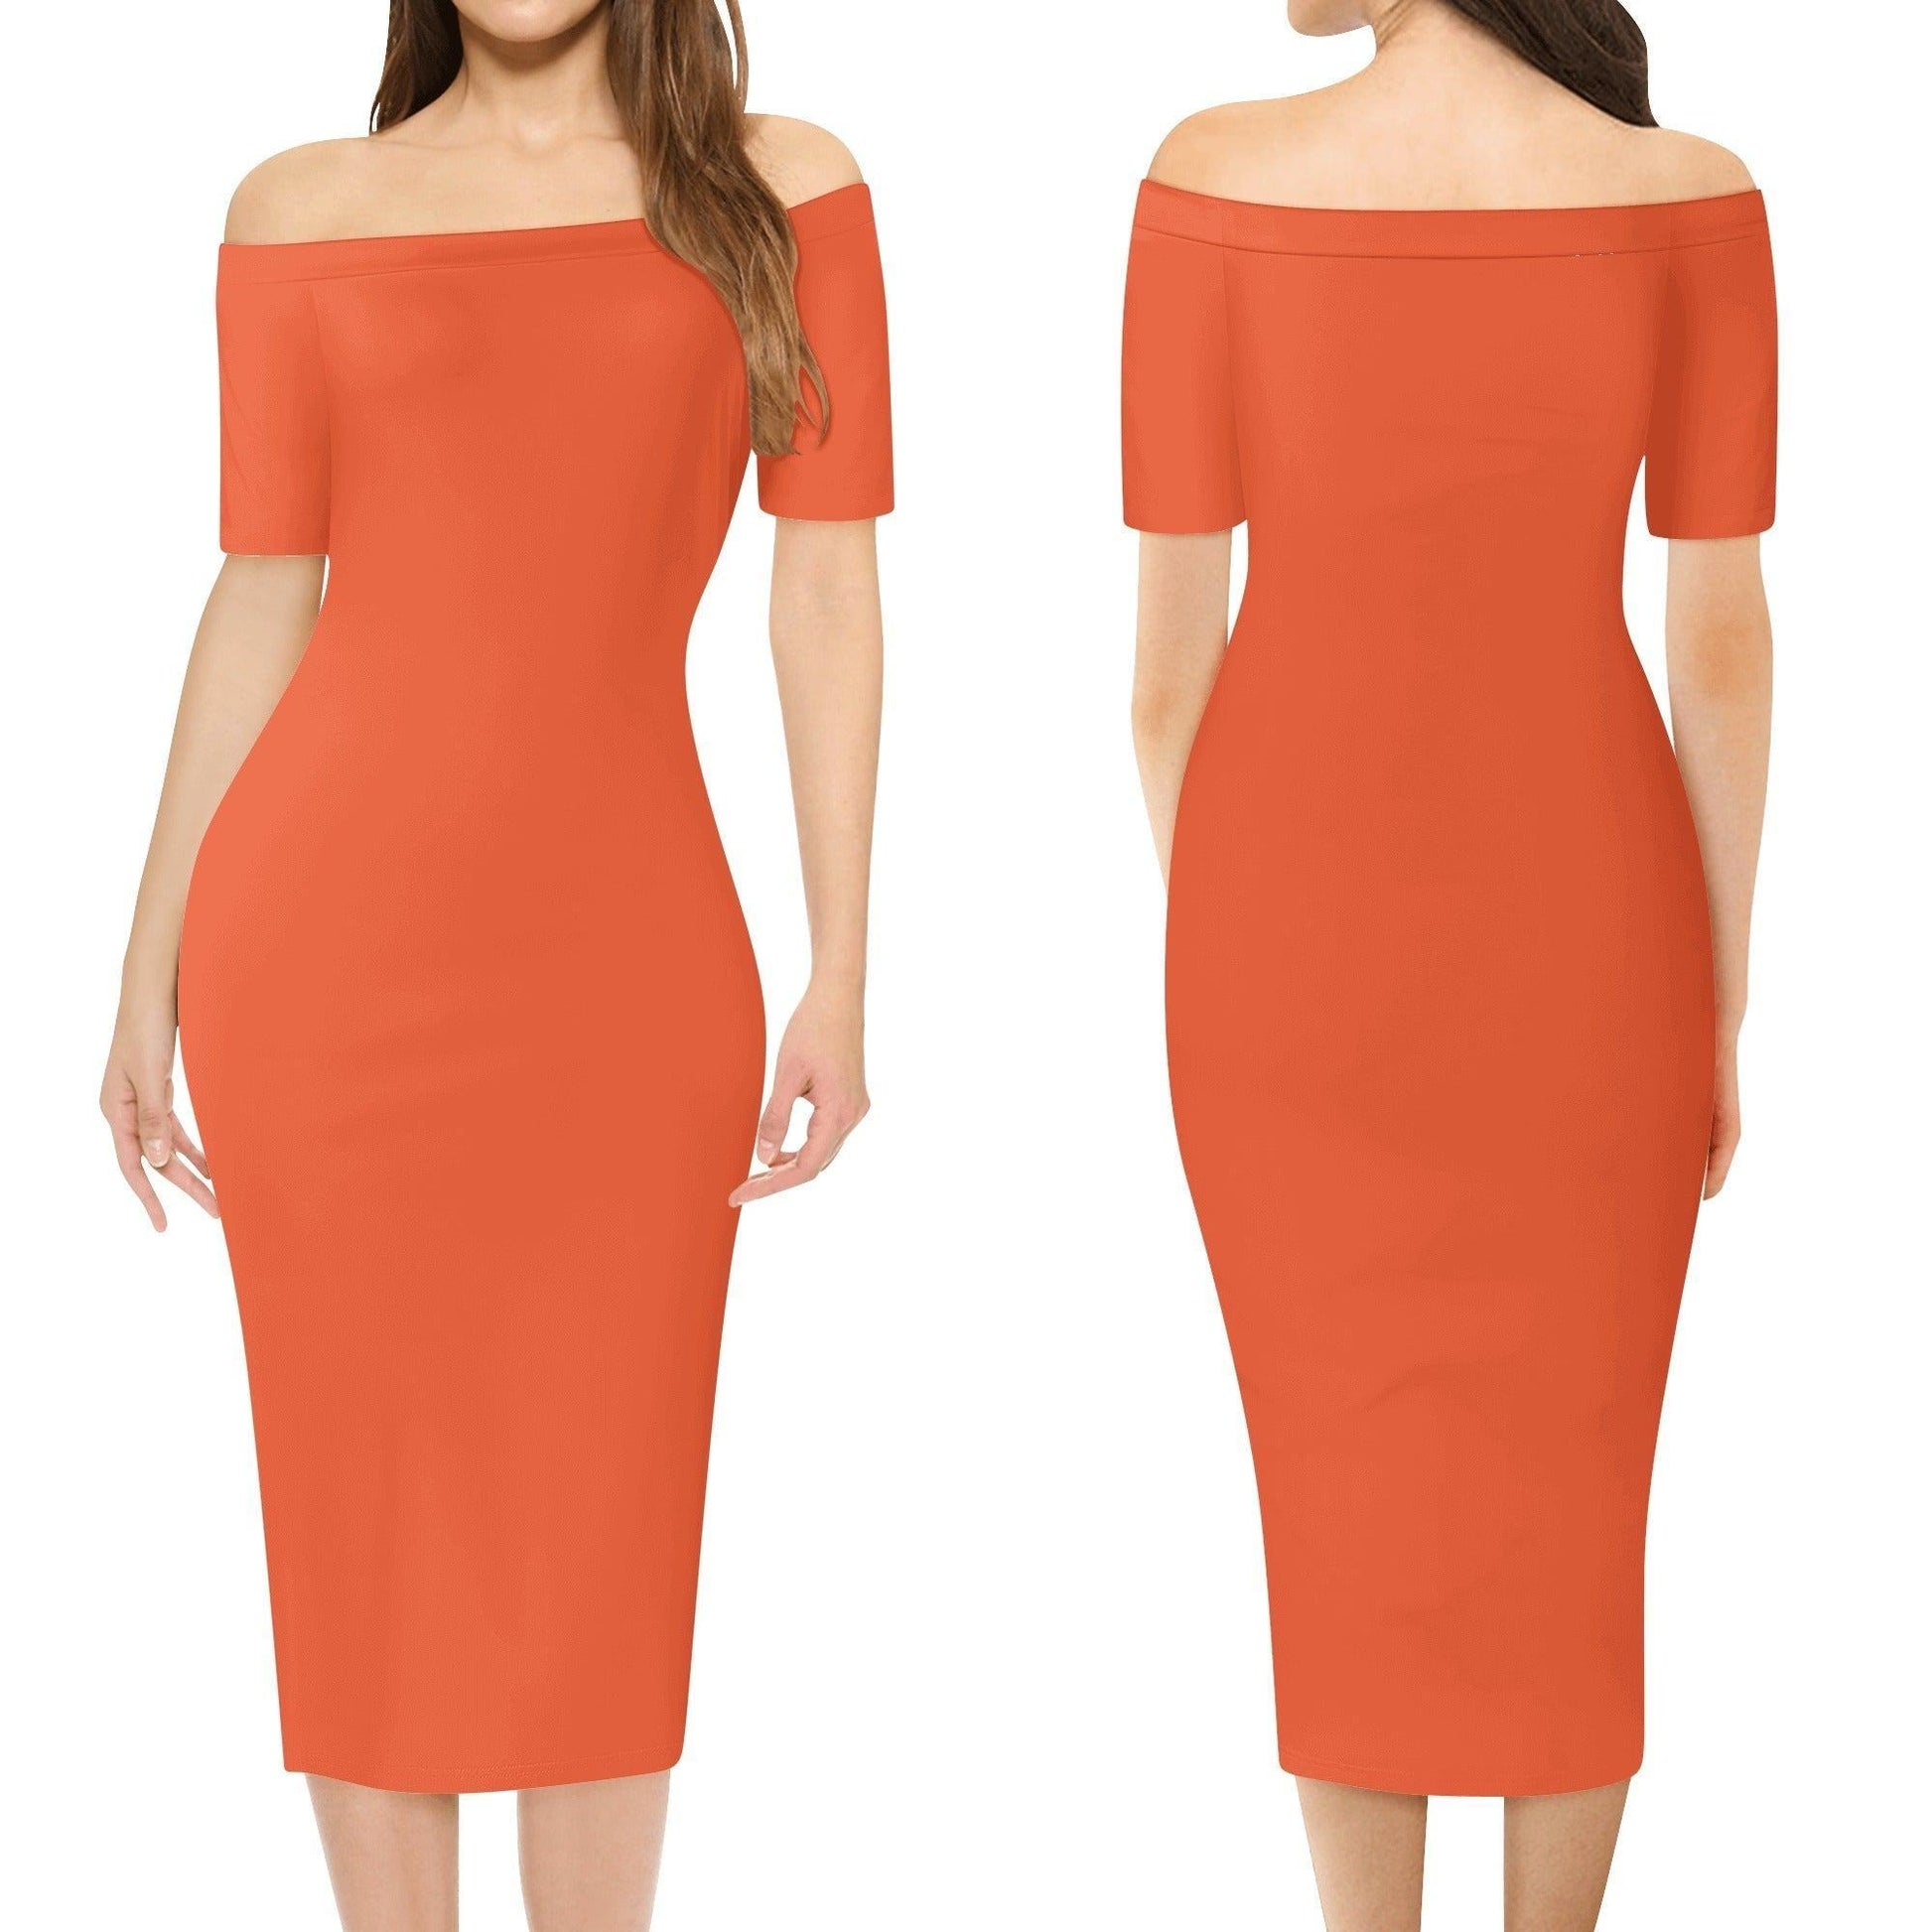 Outrageous Orange Off-Shoulder-Kleid -- Outrageous Orange Off-Shoulder-Kleid - undefined Off-Shoulder-Kleid | JLR Design